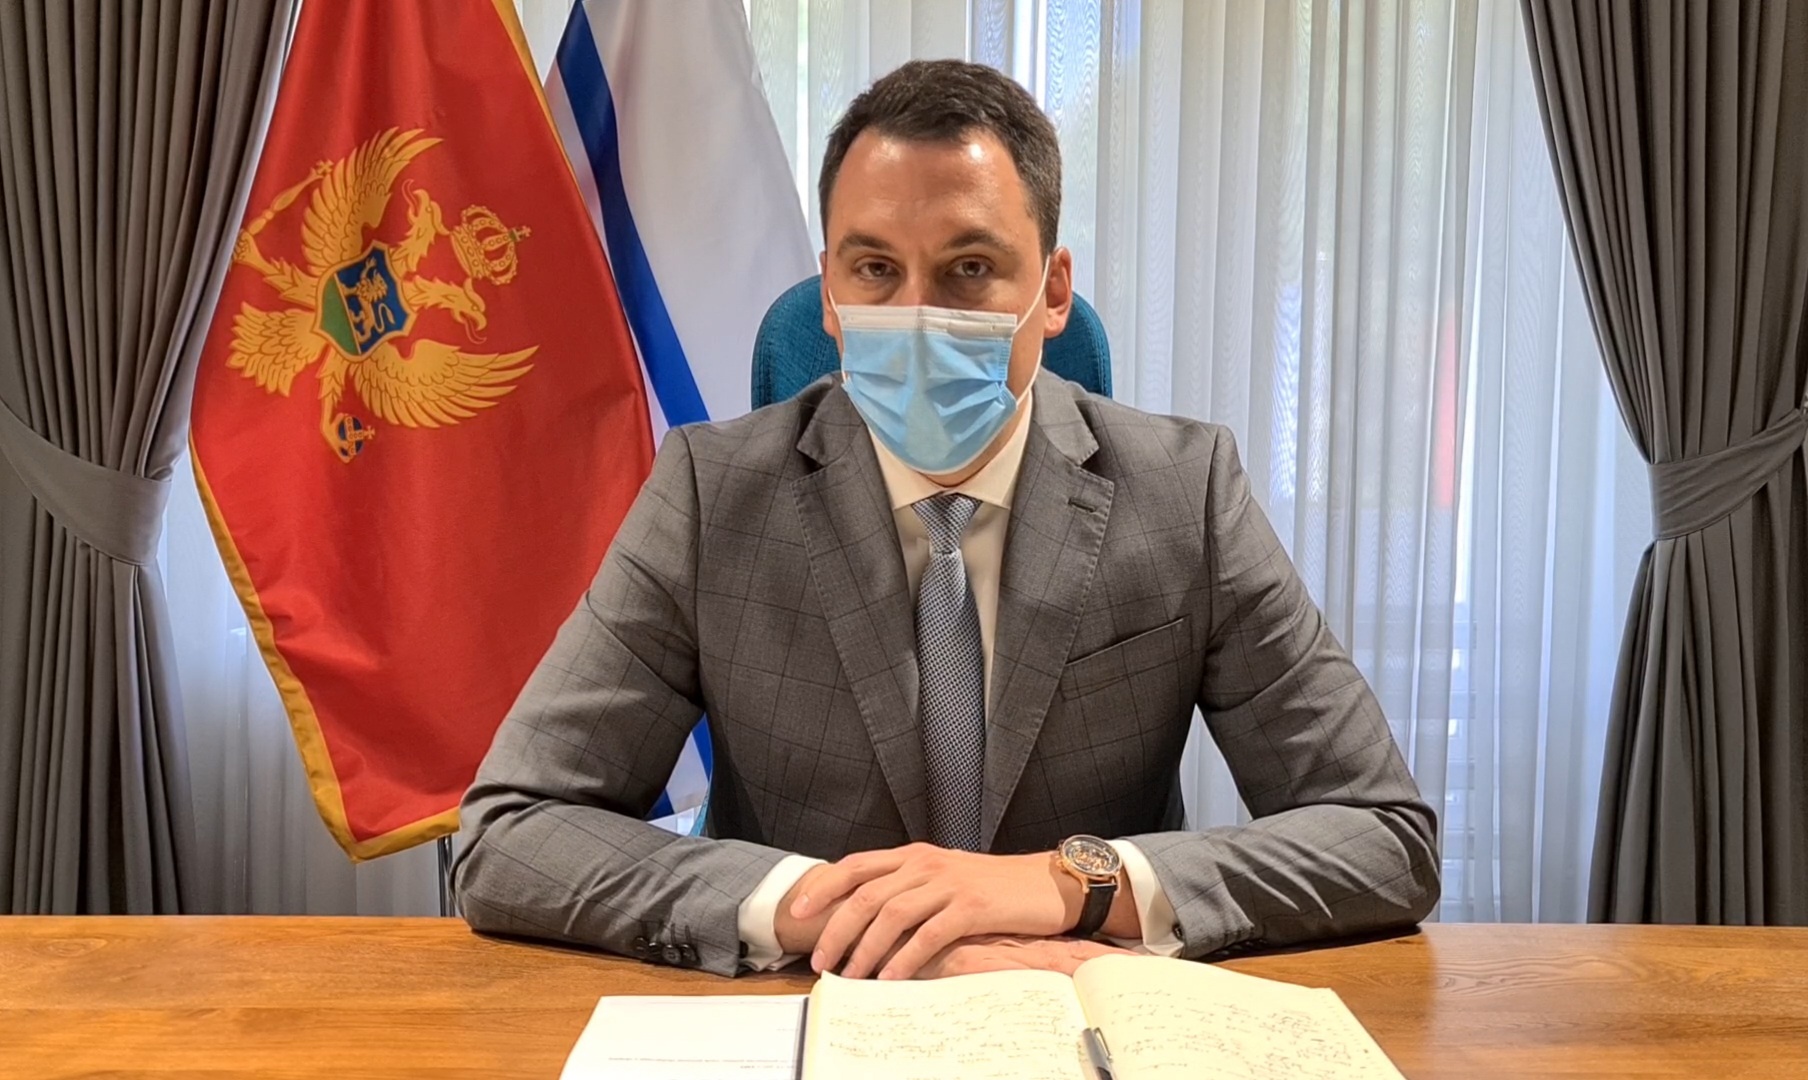 Vuković upozorio na ozbiljnost epidemiološke situacije u Podgorici i pozvao građane da striktno poštuju sve mjere i preporuke